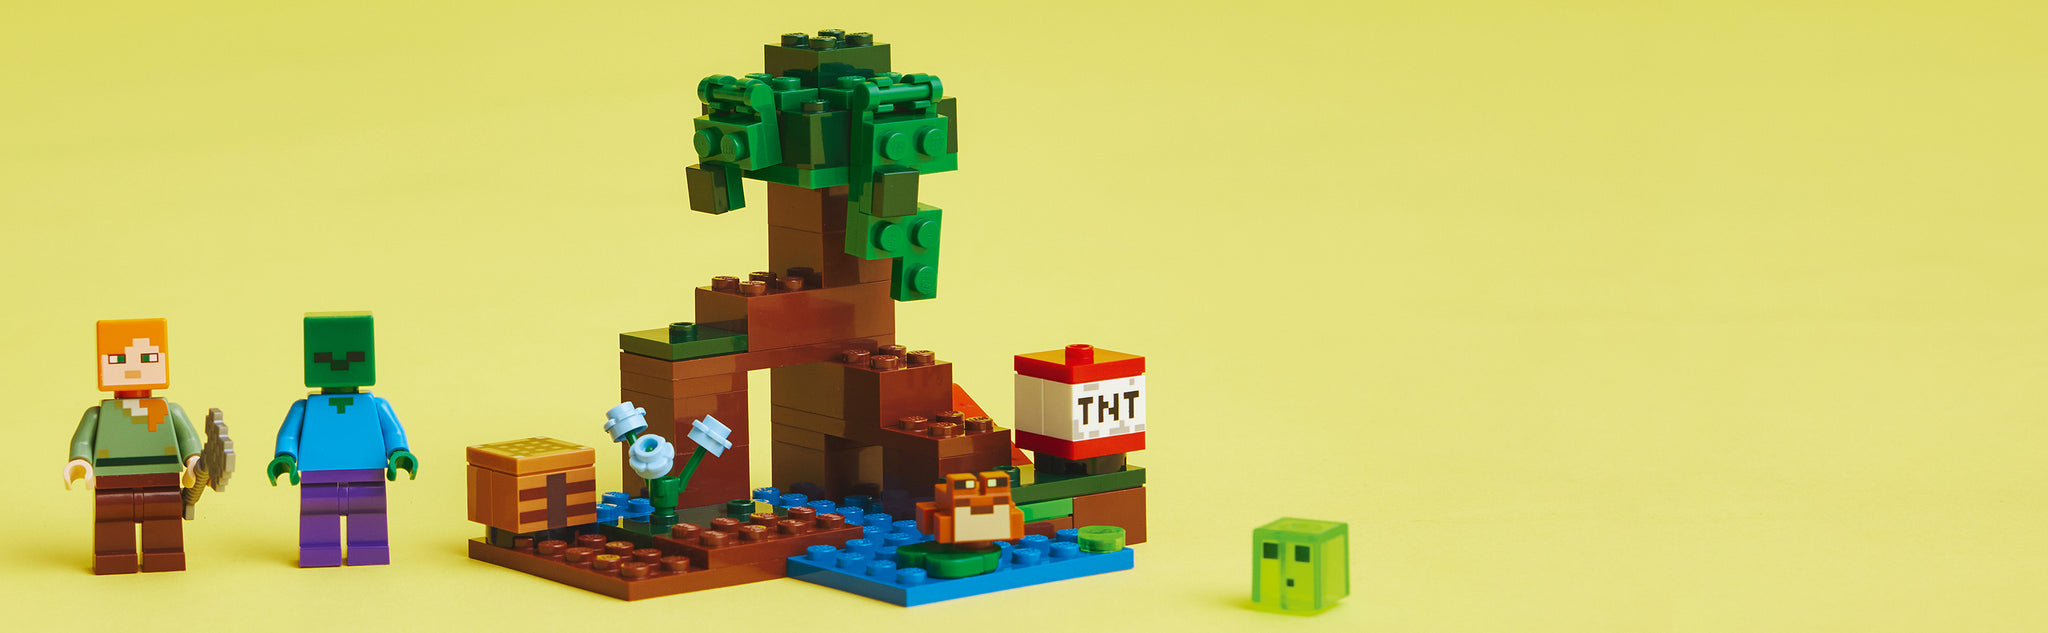 Verras Minecraft® spelers van 7 jaar en ouder met een moeras vol avontuur, actie en creativiteit met LEGO® Minecraft Het Moerasavontuur (21240).  Superleuk Minecraft speelgoed om te bouwen en te ontdekken Geef kinderen de creativiteit van Minecraft in handen met deze fysieke versie van het gevaarlijke moeraslandschap. Dit veelzijdige speelgoed bevat de bekende Minecraft favoriet Alex die door de modder en mangroven reist op een Minecraft avontuur. Naast mogelijkheden om creatief te bouwen, zijn er 2 vijandige mobs om het tegen op te nemen – een zombie en een slijm, maar ook een vriendelijke kikker die de actie observeert vanaf een lelieblad. Kinderen helpen Alex haar bijl te gebruiken en een hendel te bedienen om TNT tot ontploffing te brengen en elke aanval af te weren. Voor extra digitaal plezier heeft de LEGO Builder app intuïtieve zoom- en draaifuncties waarmee kinderen hun model kunnen visualiseren terwijl ze het bouwen.  Creatieve Minecraft® speelset – LEGO® Minecraft Het Moerasavontuur (21240) bootst het mangrovemoeras van het spel na en zit boordevol mogelijkheden om creatief te bouwen en spannende confrontaties na te spelen Bekende personages – bevat de Minecraft® favorieten Alex, een zombie, een slijmblok en een kikker in een moeraslandschap compleet met een mangroveboom, werkbank, bijl en exploderende TNT-functie Veel speelmogelijkheden – kinderen kunnen bouwen, verkennen, strijden en TNT tot ontploffing brengen terwijl ze vijandige mobs in het gevaarlijke mangrovemoeras afweren Leuk cadeau voor kinderen – verras Minecraft® spelers van 7 jaar en ouder met deze fysieke versie van het spannende moeras uit de game voor een verjaardag, de feestdagen of een andere gelegenheid Ook voor onderweg – deze compacte set is ca. 8 cm hoog, 9 cm breed en 8 cm diep en biedt diverse speelmogelijkheden Interactief digitaal bouwen – de LEGO® Builder app heeft intuïtieve zoom- en draaifuncties waarmee kinderen hun model kunnen visualiseren terwijl ze het bouwen Minecraft® in het echt – met LEGO® Minecraft sets beleven kinderen de populaire game op een andere manier met mobs, omgevingen en kenmerken die tot leven worden gebracht met LEGO stenen Kwaliteit gegarandeerd – LEGO® onderdelen voldoen aan strenge kwaliteitsnormen, waardoor ze consistent, compatibel en comfortabel in elkaar te zetten zijn Veiligheid staat voorop – LEGO® onderdelen worden gegooid, verhit, geplet, gedraaid engeanalyseerd om er zeker van te zijn dat ze voldoen aan strikte wereldwijde veiligheidsnormen